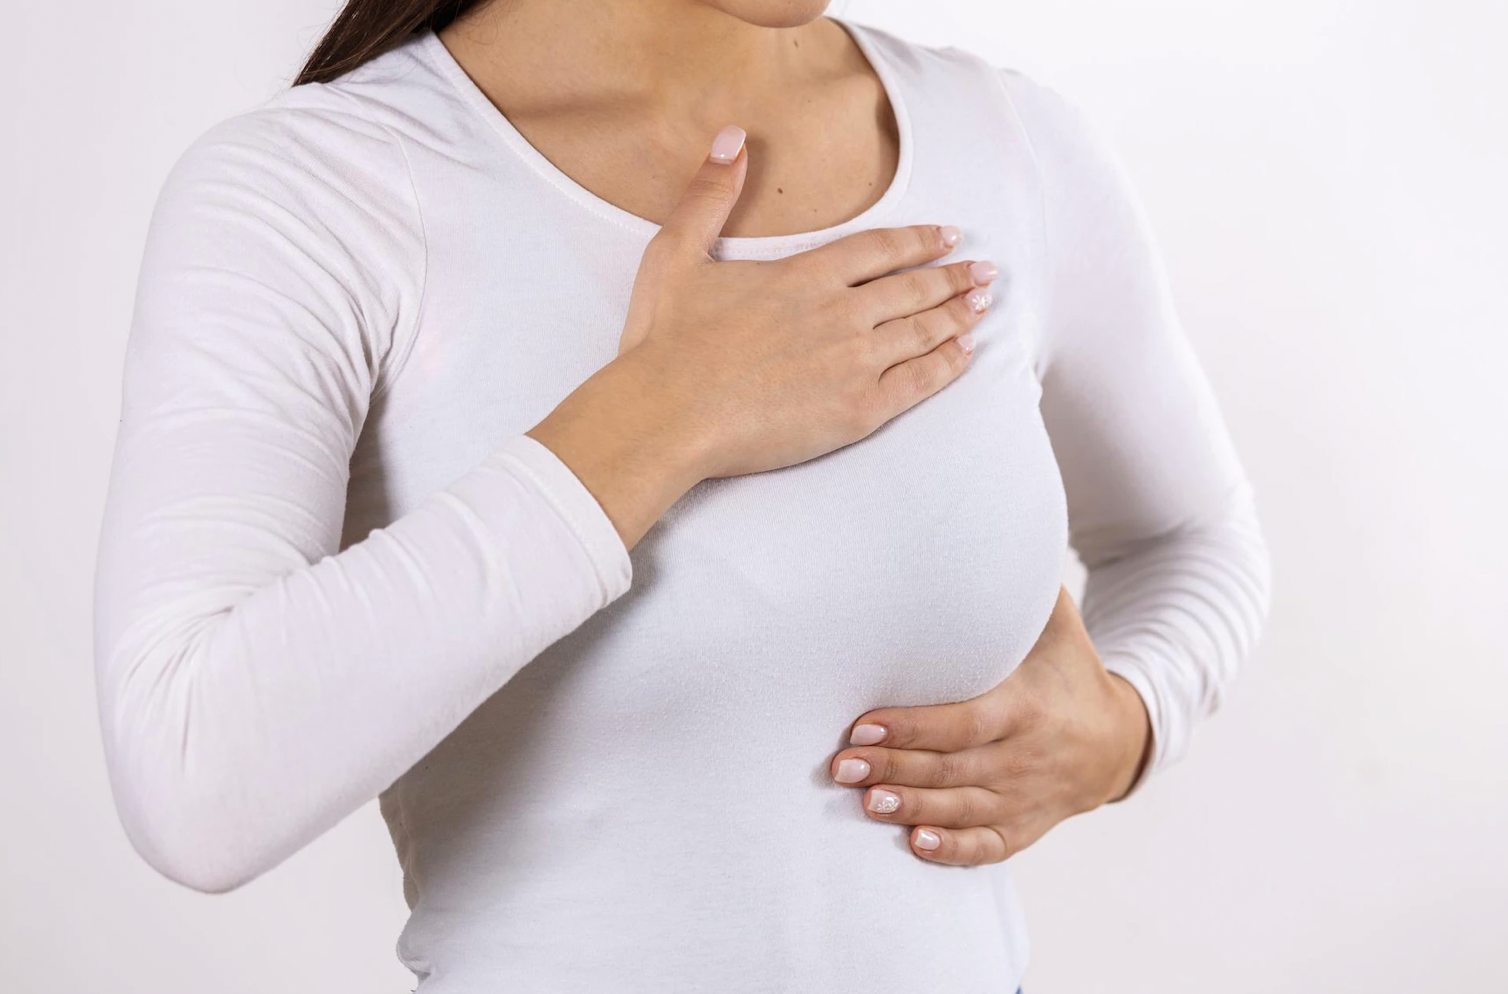 7 мифов о раке груди, которые опровергает наука